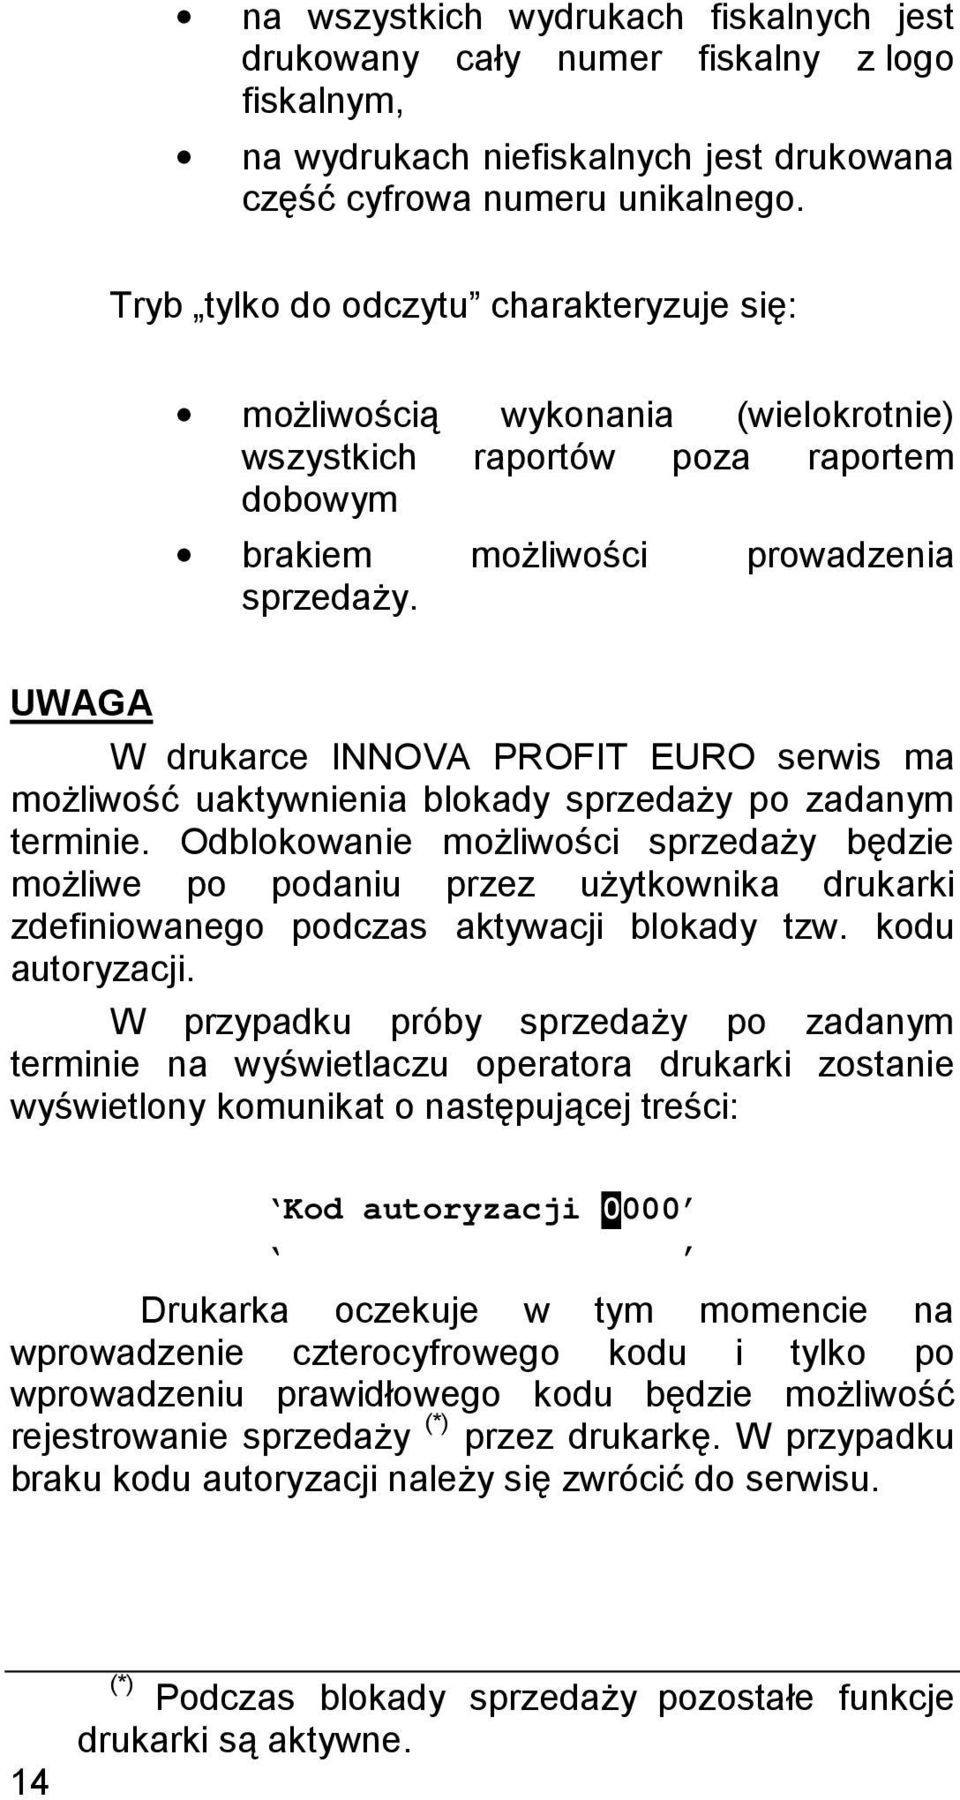 UWAGA W drukarce INNOVA PROFIT EURO serwis ma możliwość uaktywnienia blokady sprzedaży po zadanym terminie.